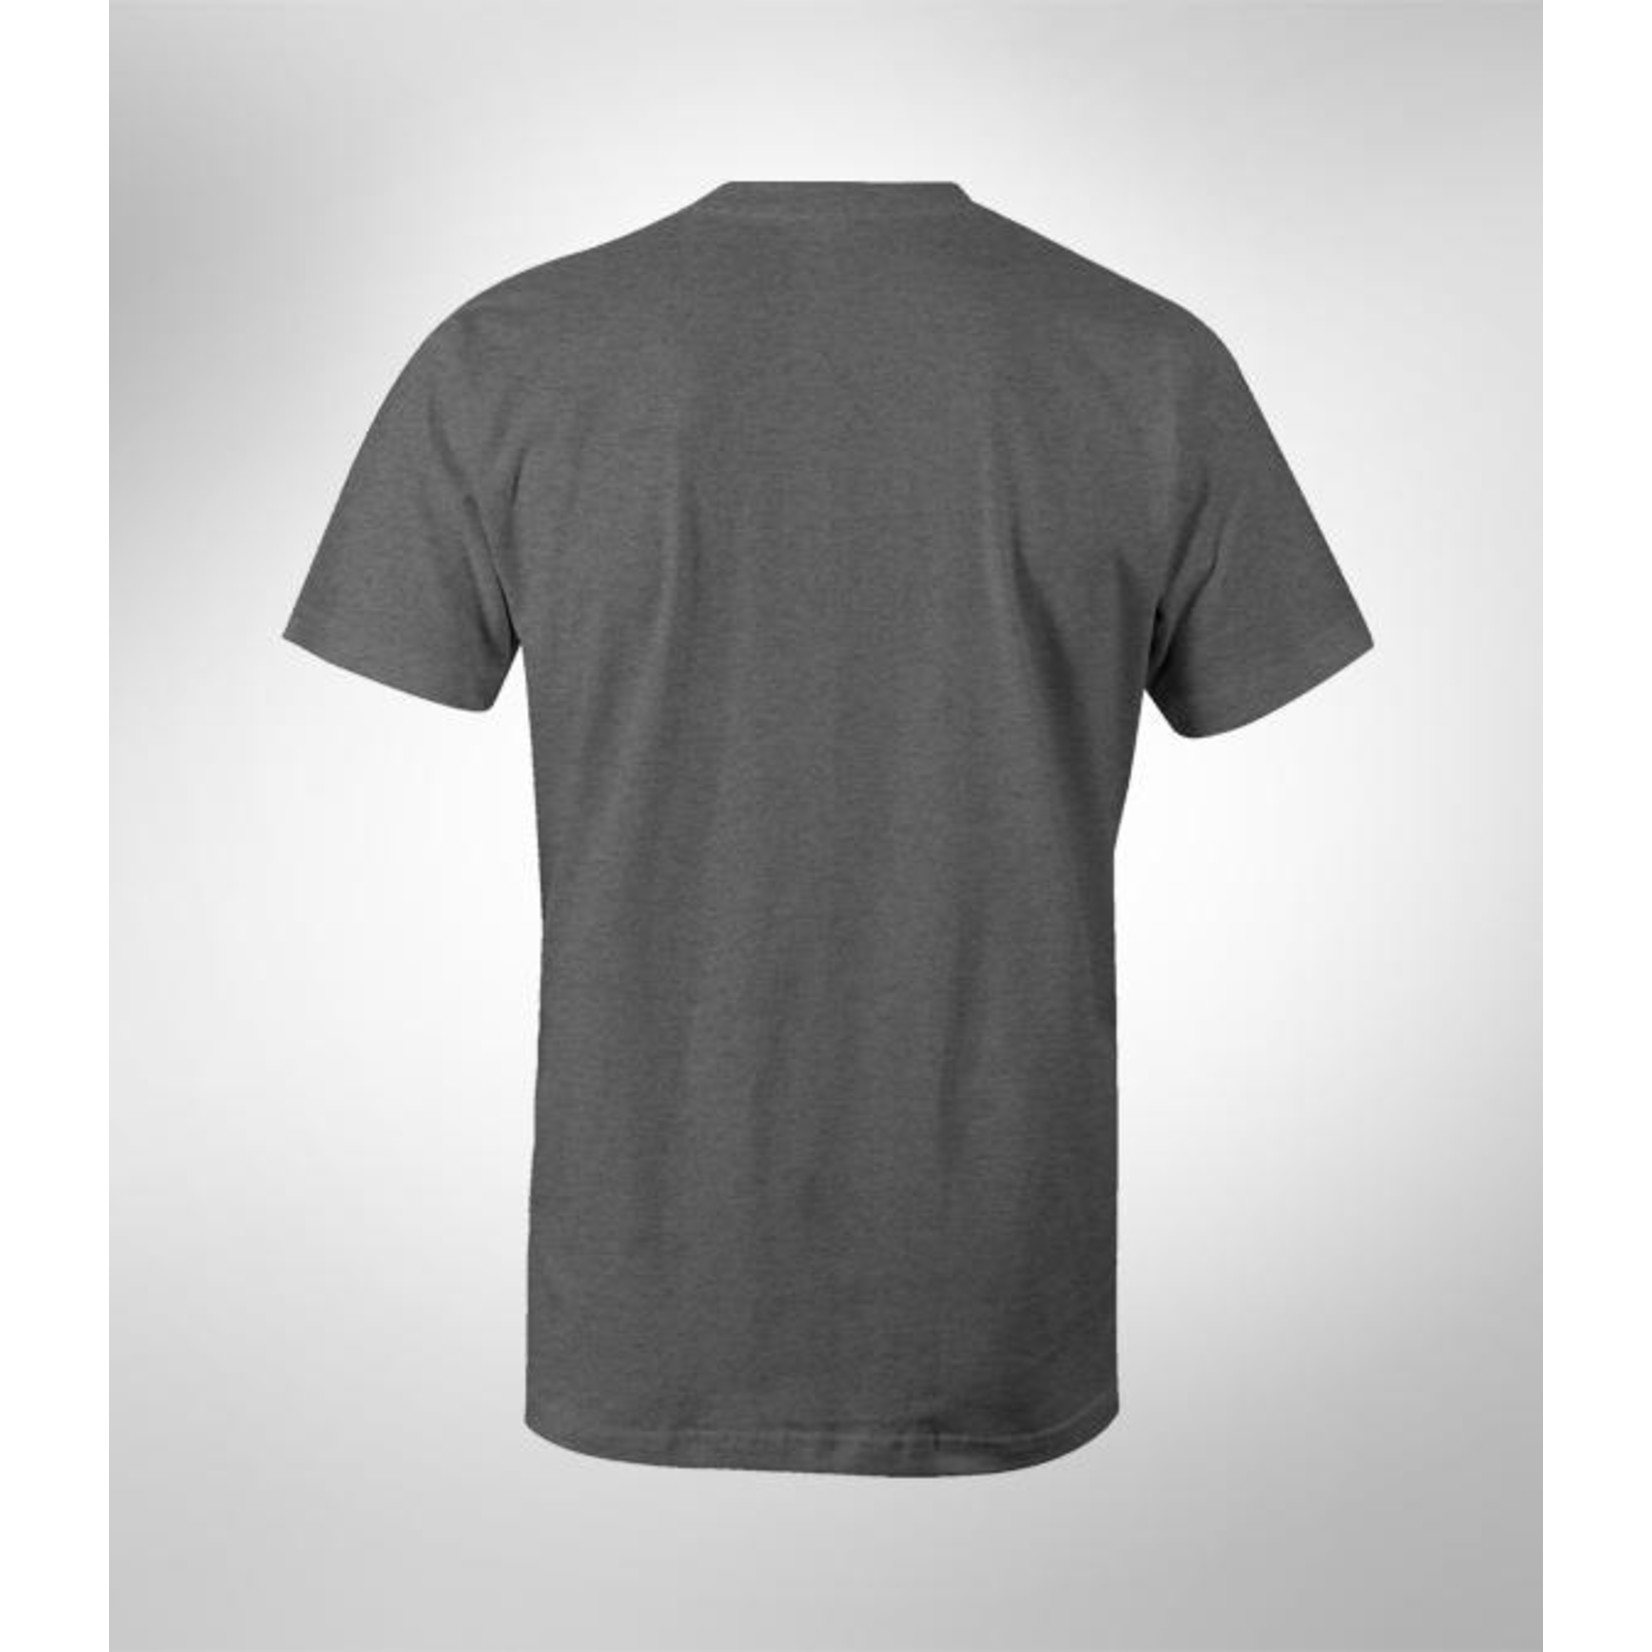 Werner Werner Men's 100 % Cotton T-Shirt - Closeout